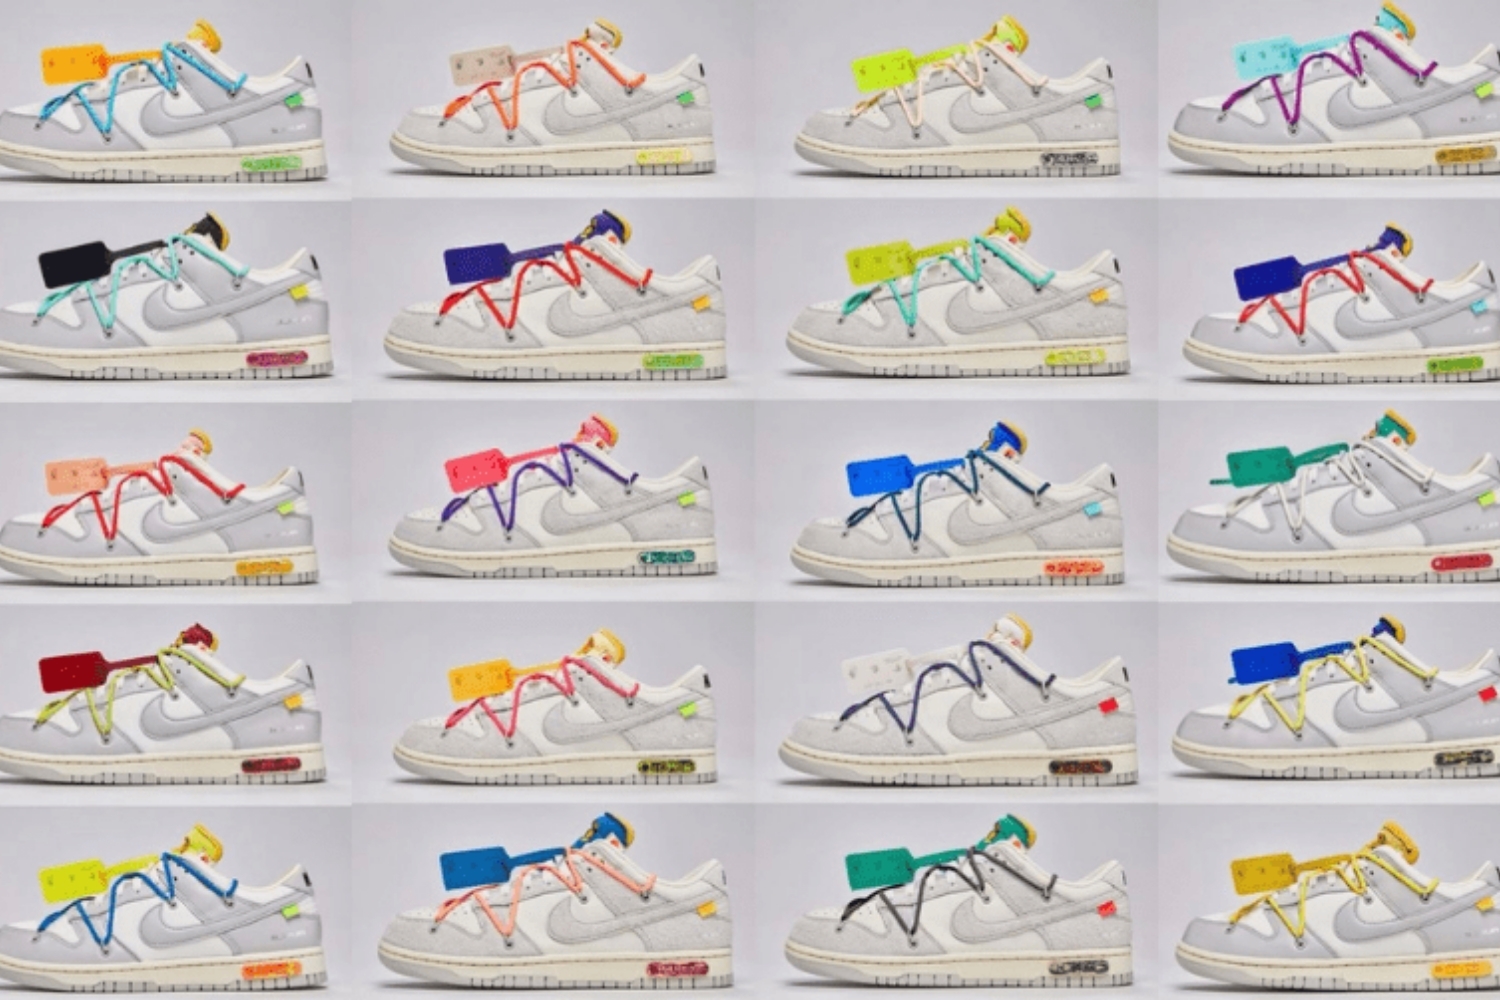 Beschenkt uns Virgil Abloh mit 50 verschiedenen Off-White x Nike Dunks 😱